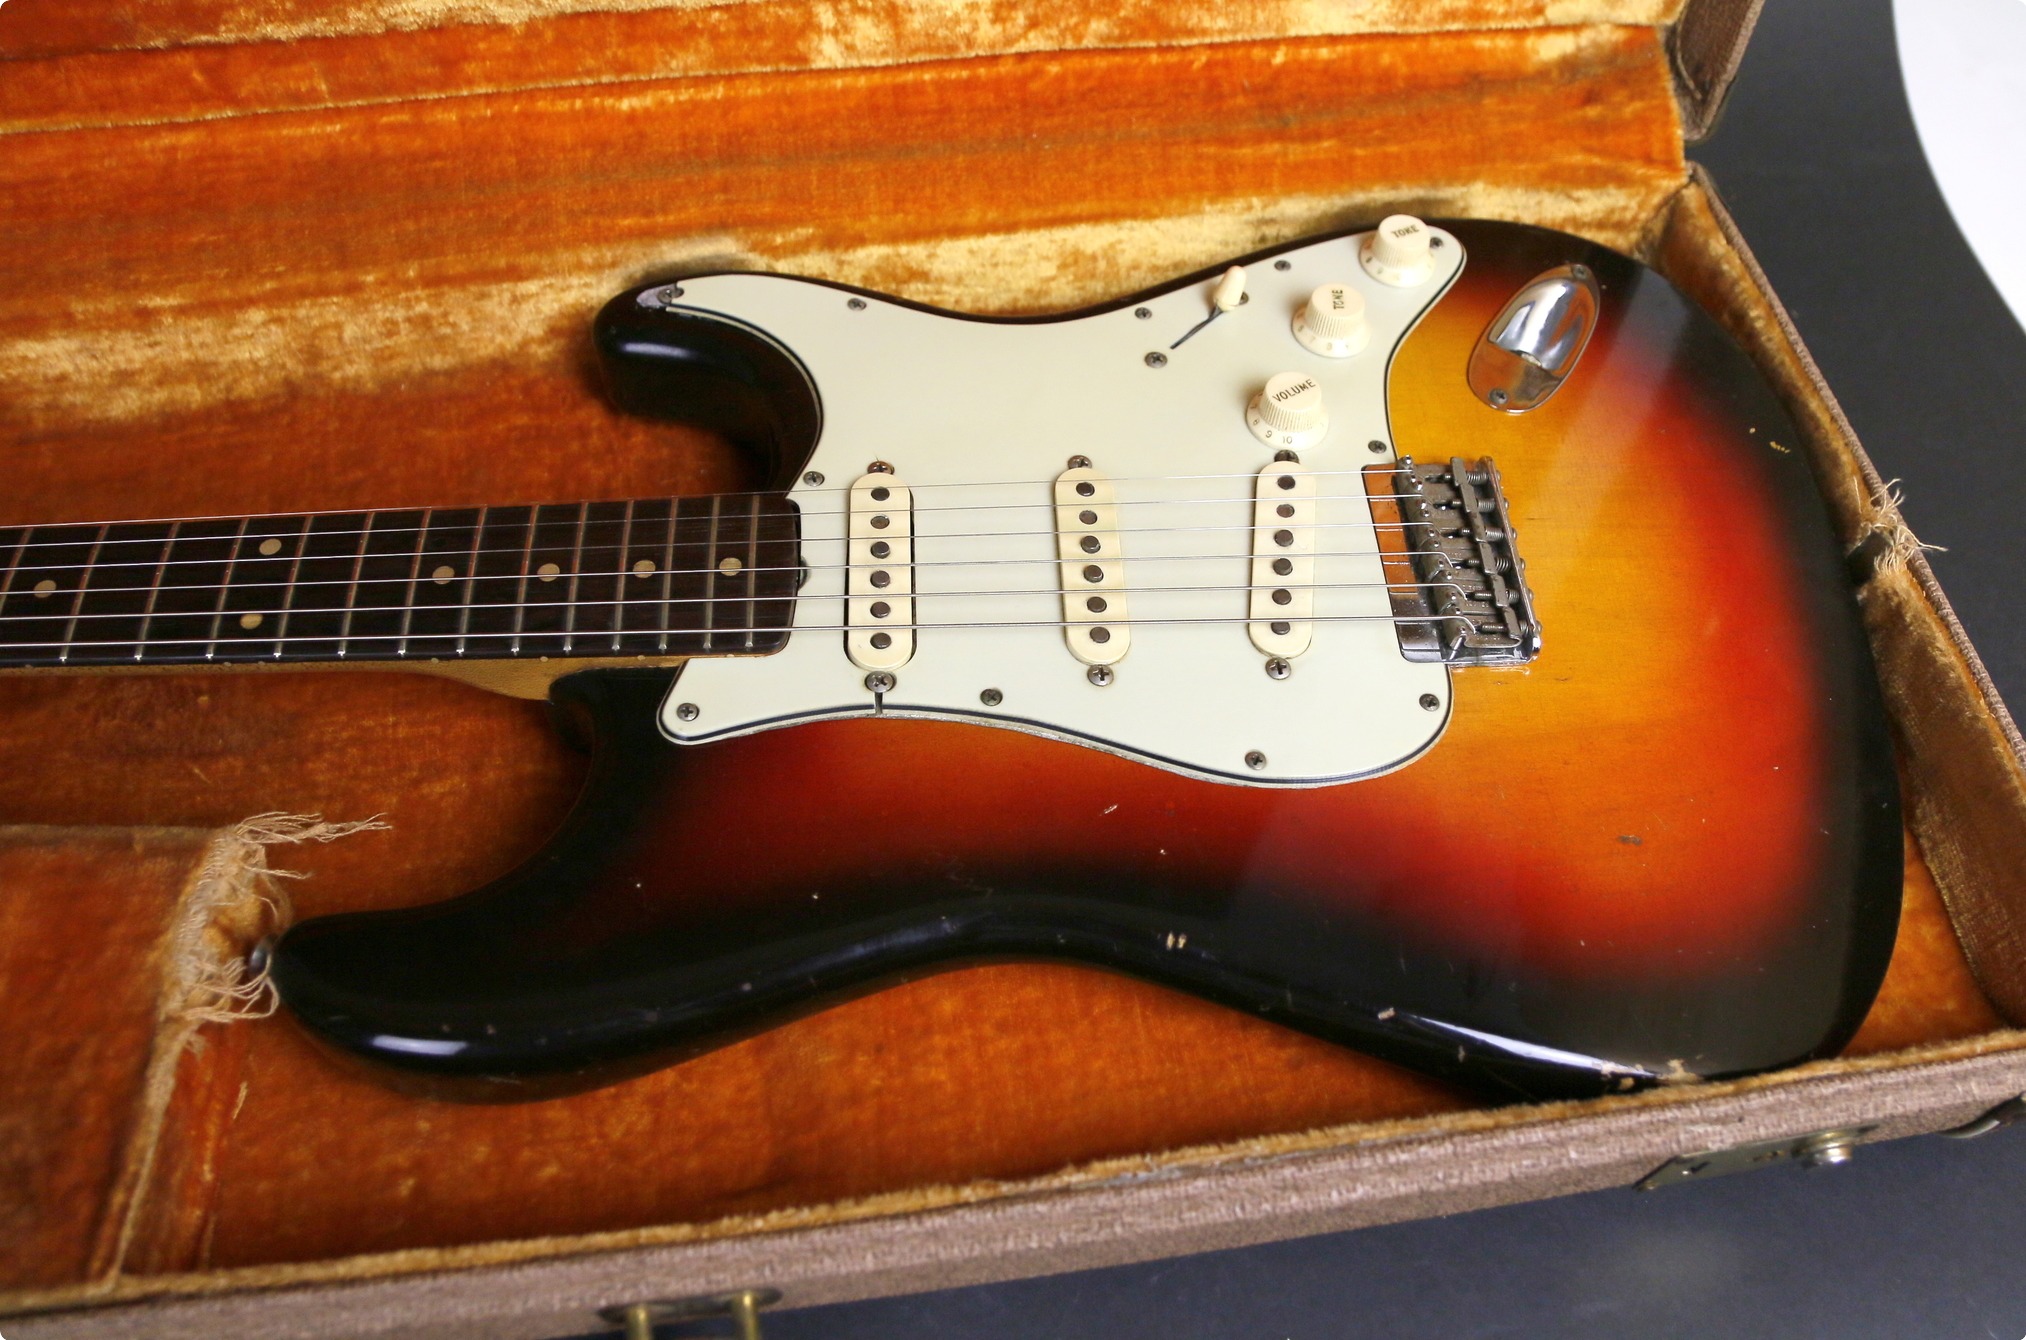 Fender Stratocaster 1962 Sunburst Guitar For Sale Jaysvintage